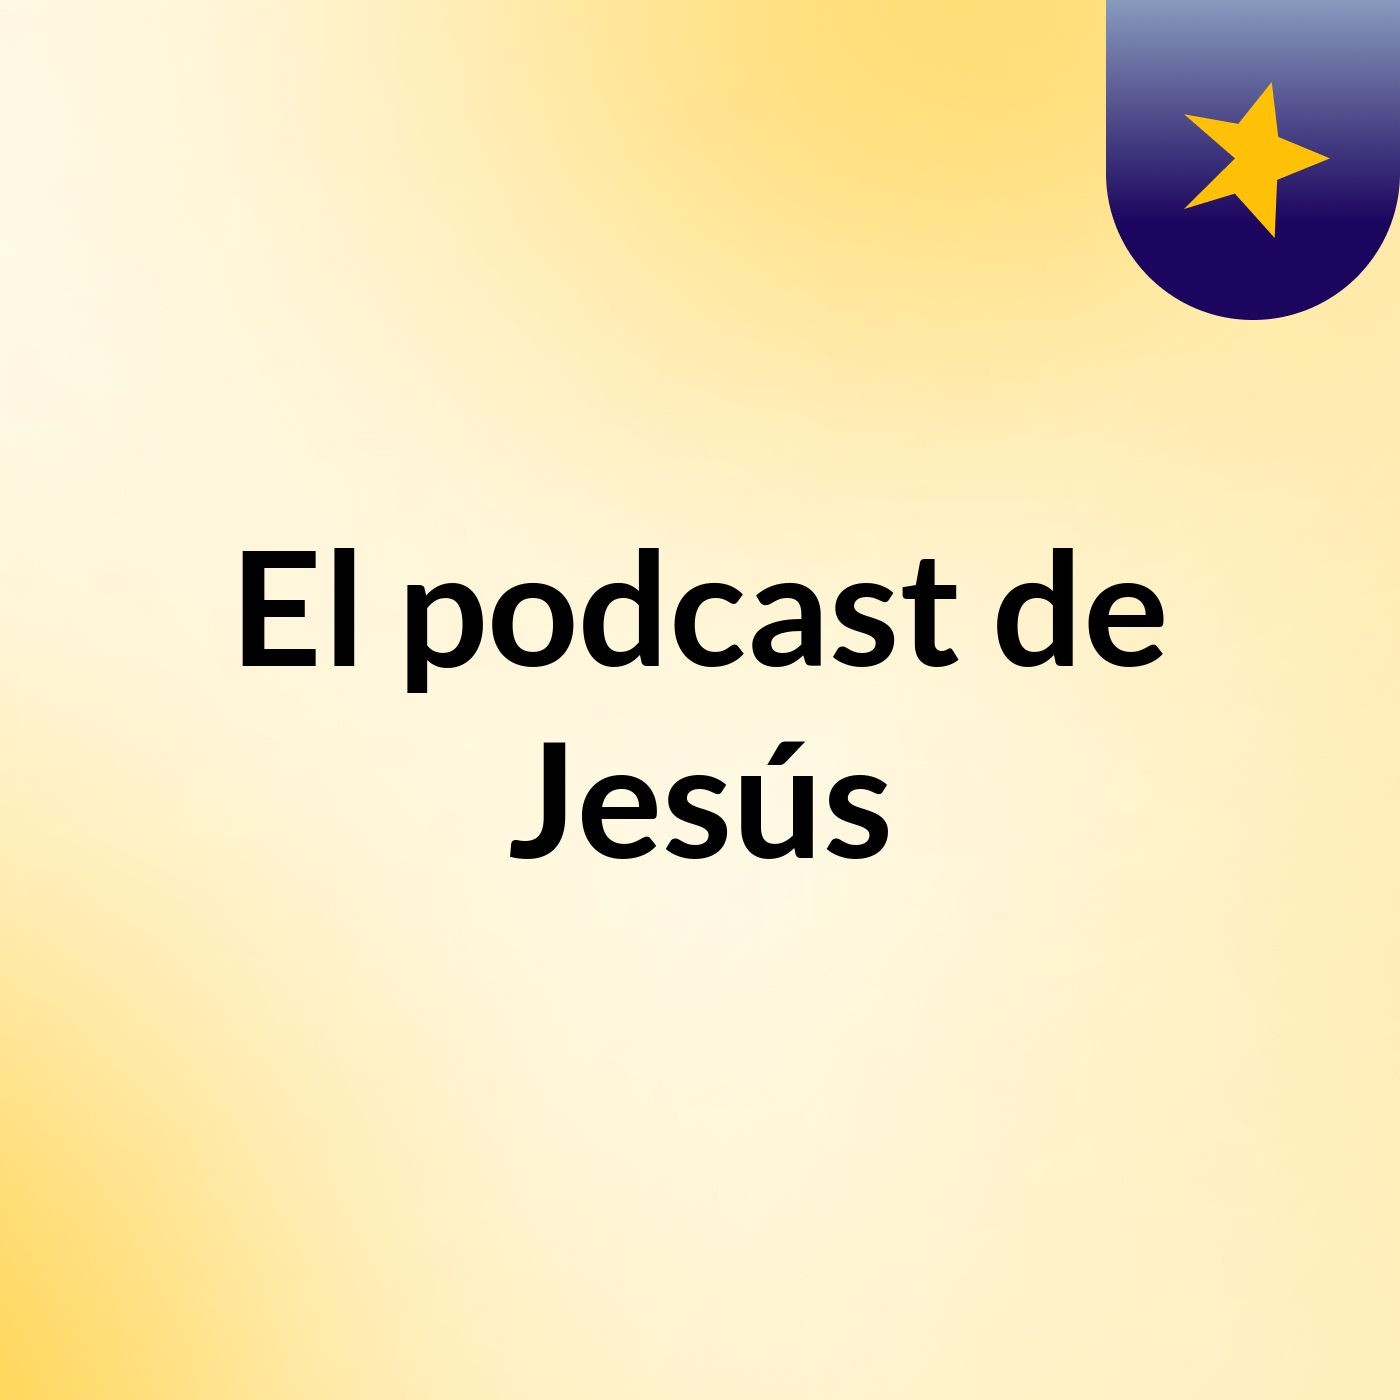 Episodio 18 - El podcast de Jesús